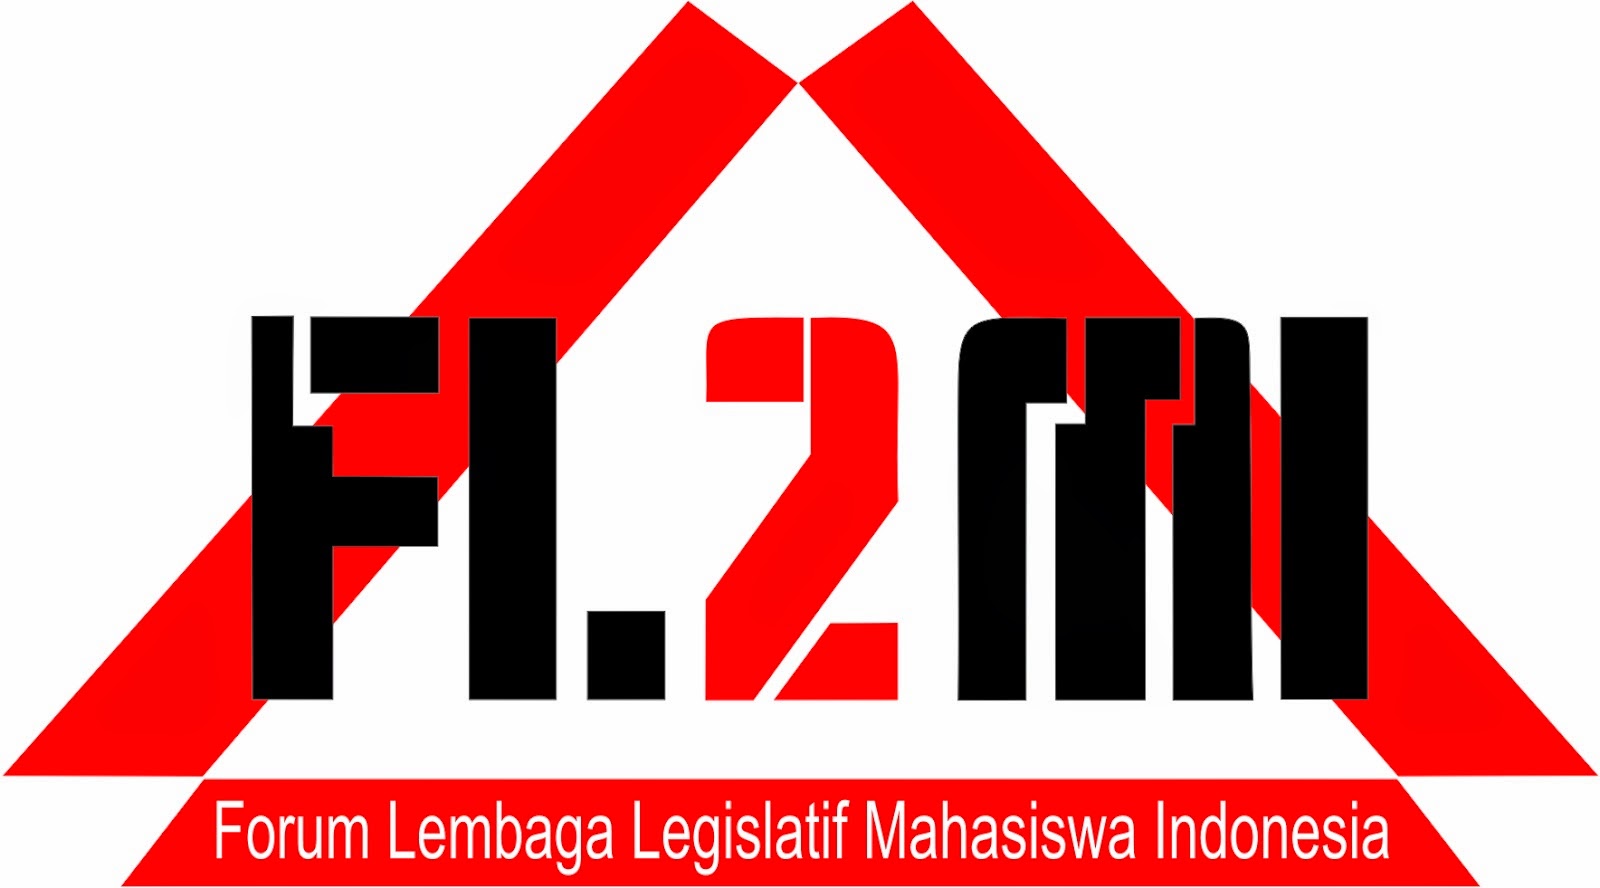 Forum Lembaga Legislatif Mahasiswa Indonesia